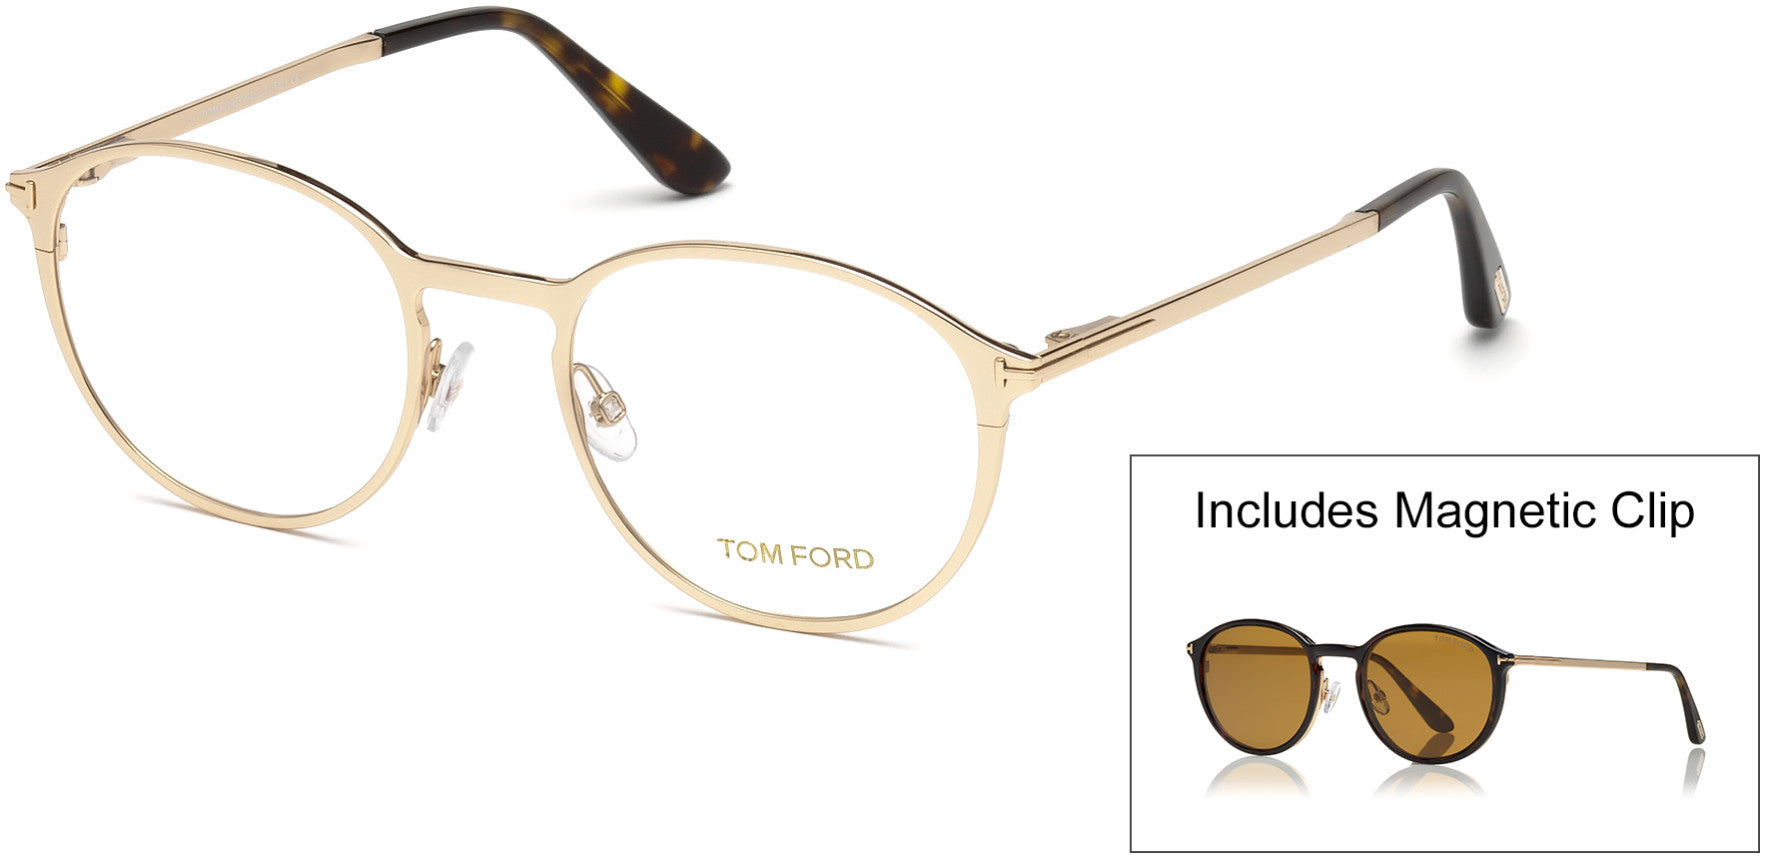 Tom Ford FT5476 Round Eyeglasses 28E-28E - Shiny Rose Gold / Shiny Dark Havana, Brown Lens Clip-On